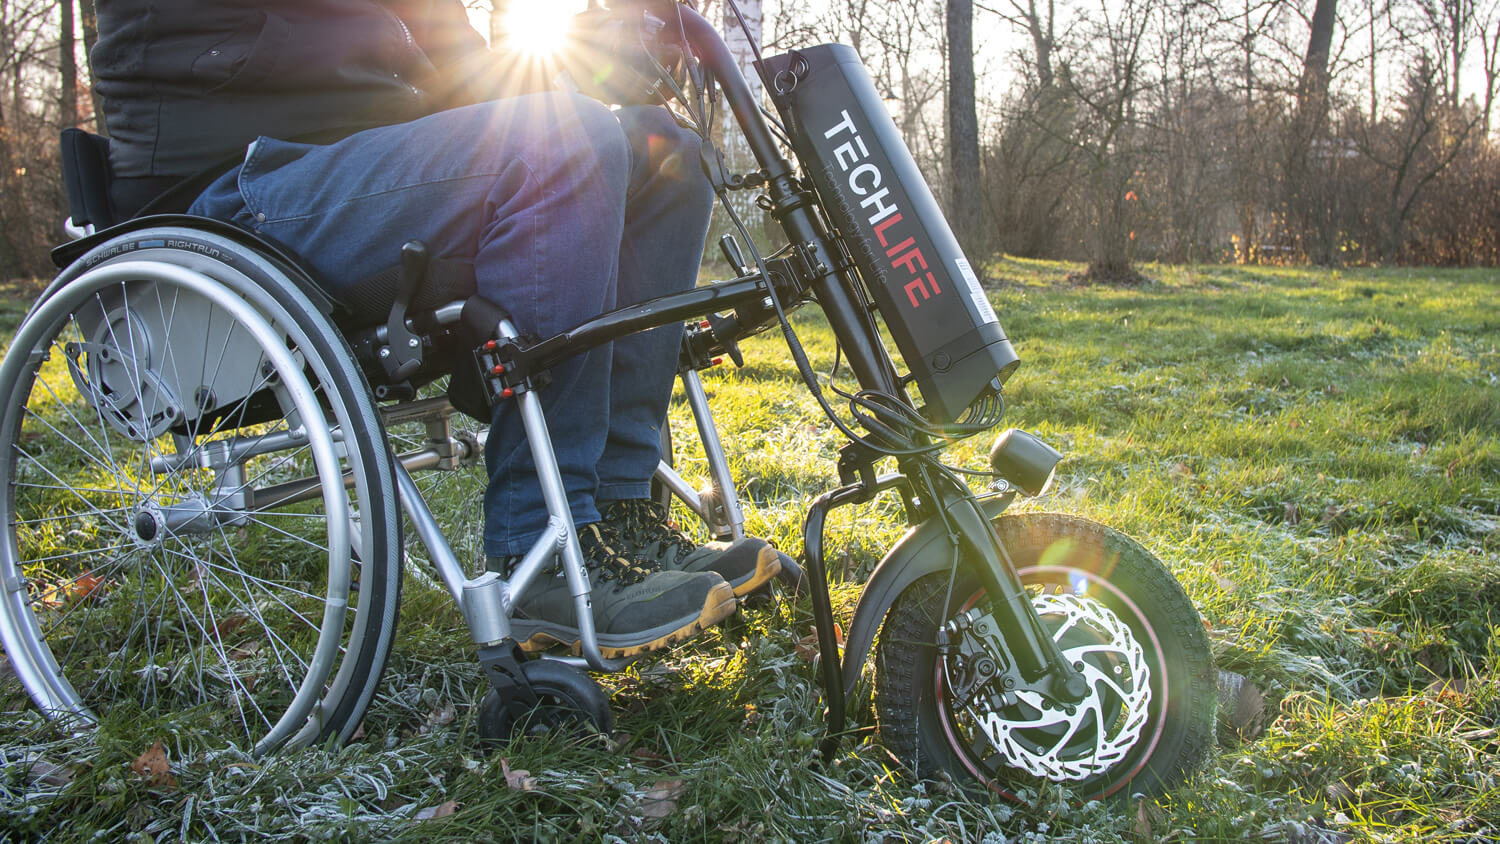 Dostawka z napędem elektrycznym do wózka inwalidzkiego Techlife W1